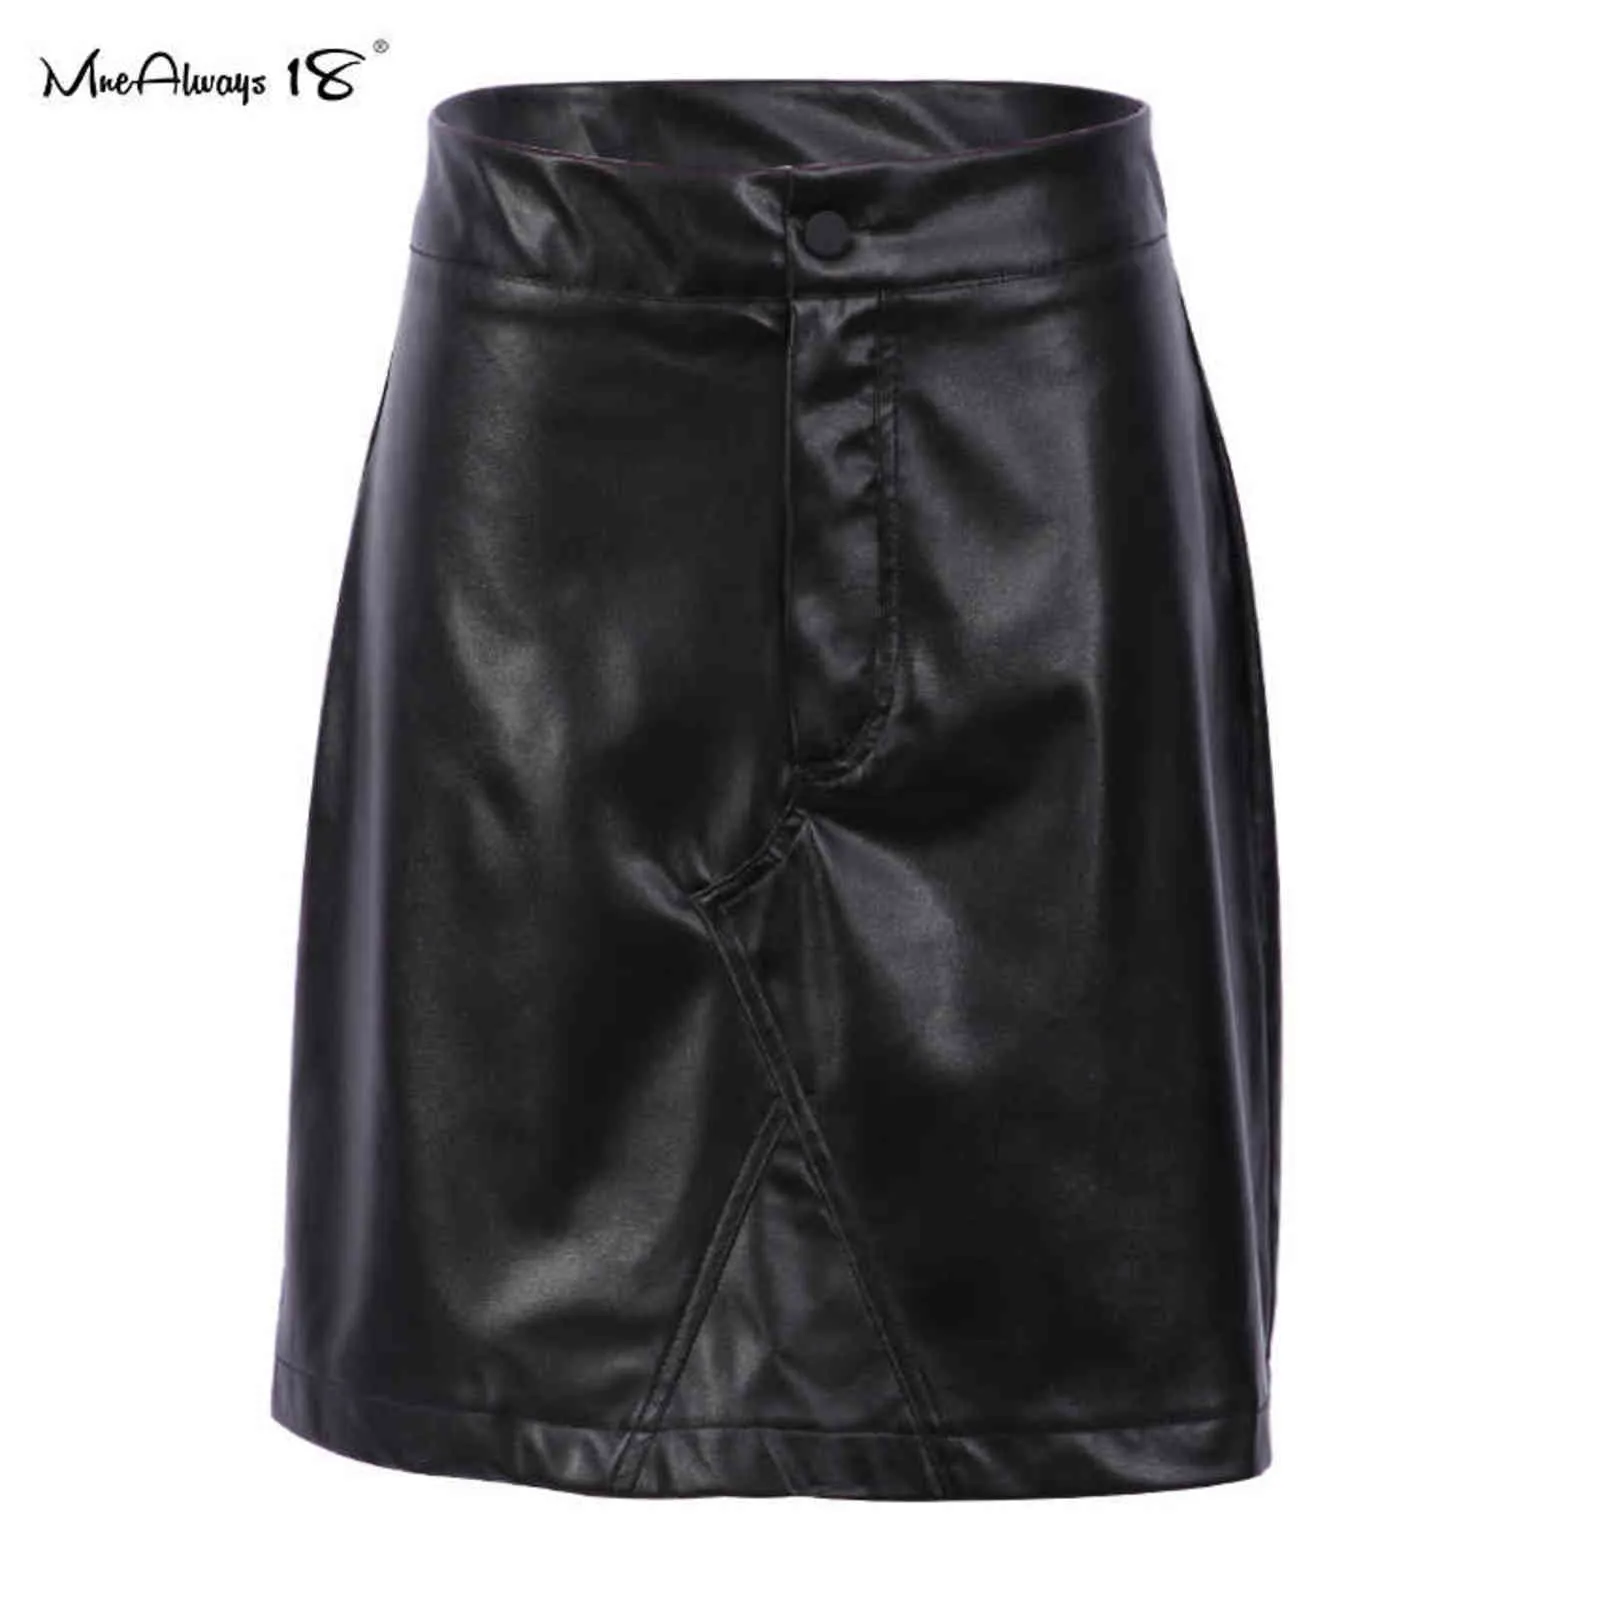 Mnealways18 Vintage cuir femmes jupes moulante taille haute A-ligne jupe bouton mode travail hiver dames jupes courtes fermeture éclair 211120